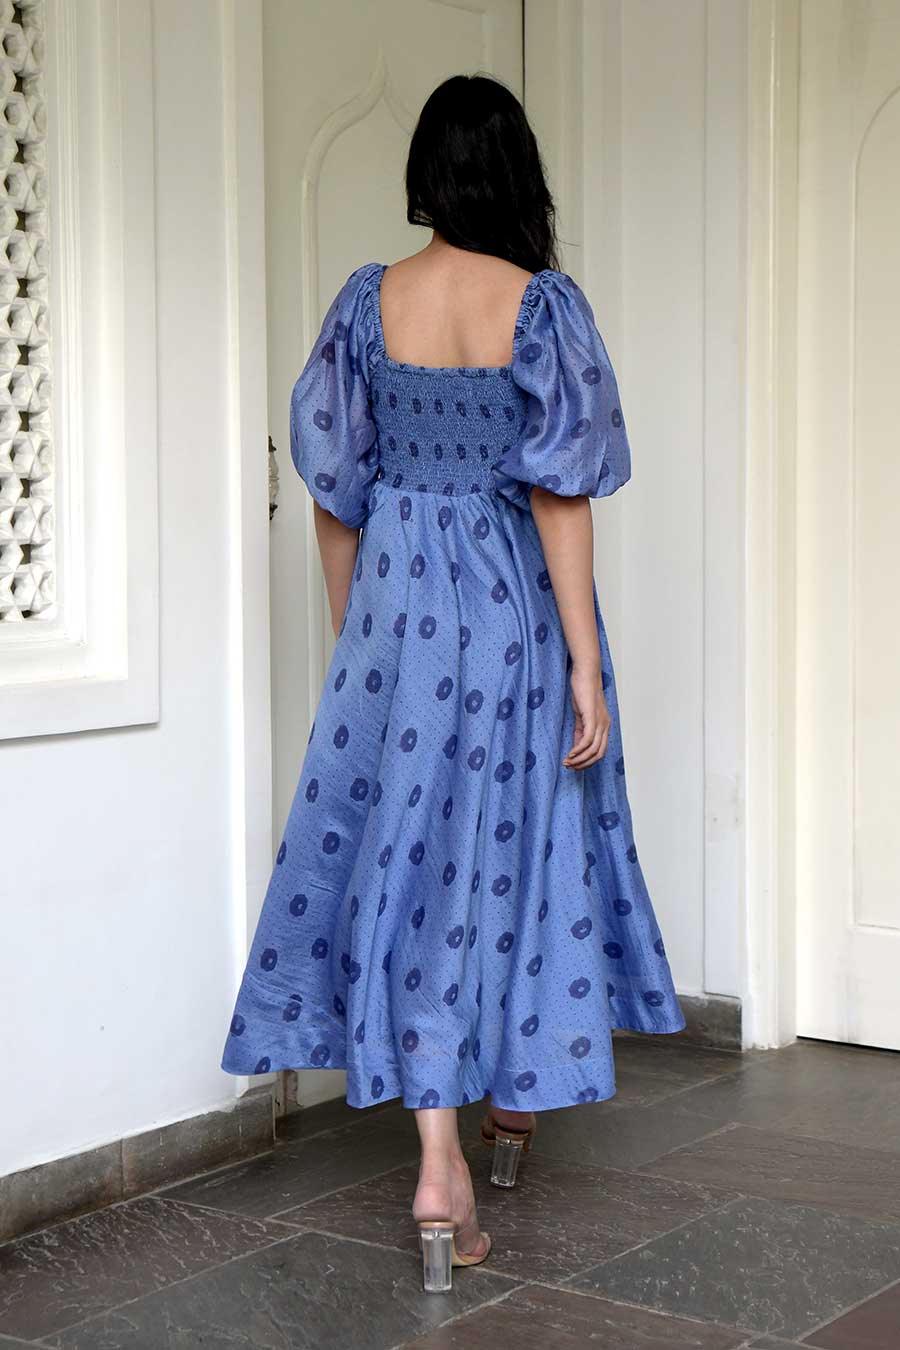 Cornflower Blue Handwoven Dress